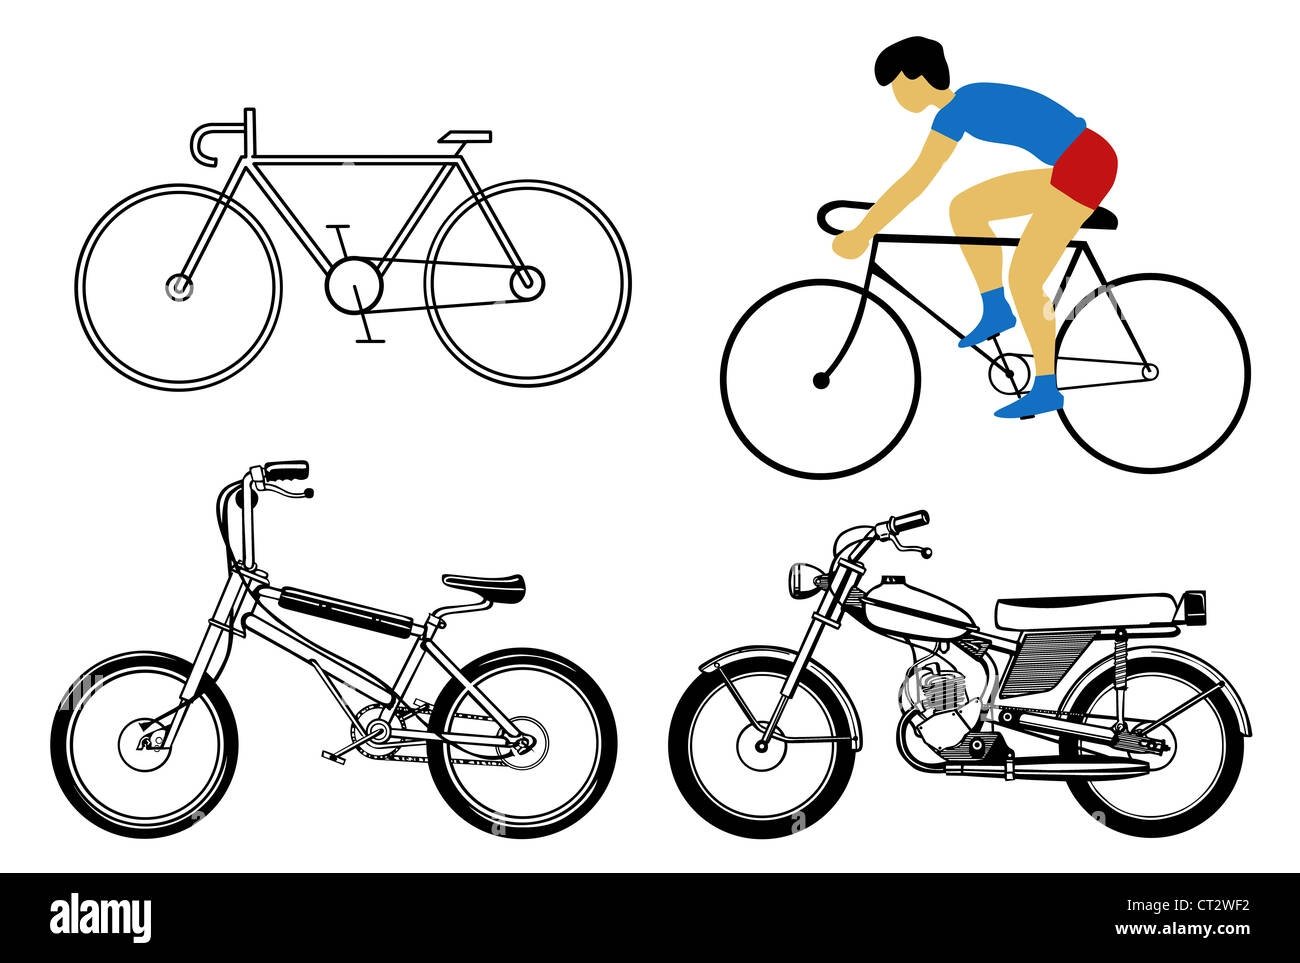 Как нарисовать человека на велосипеде поэтапно